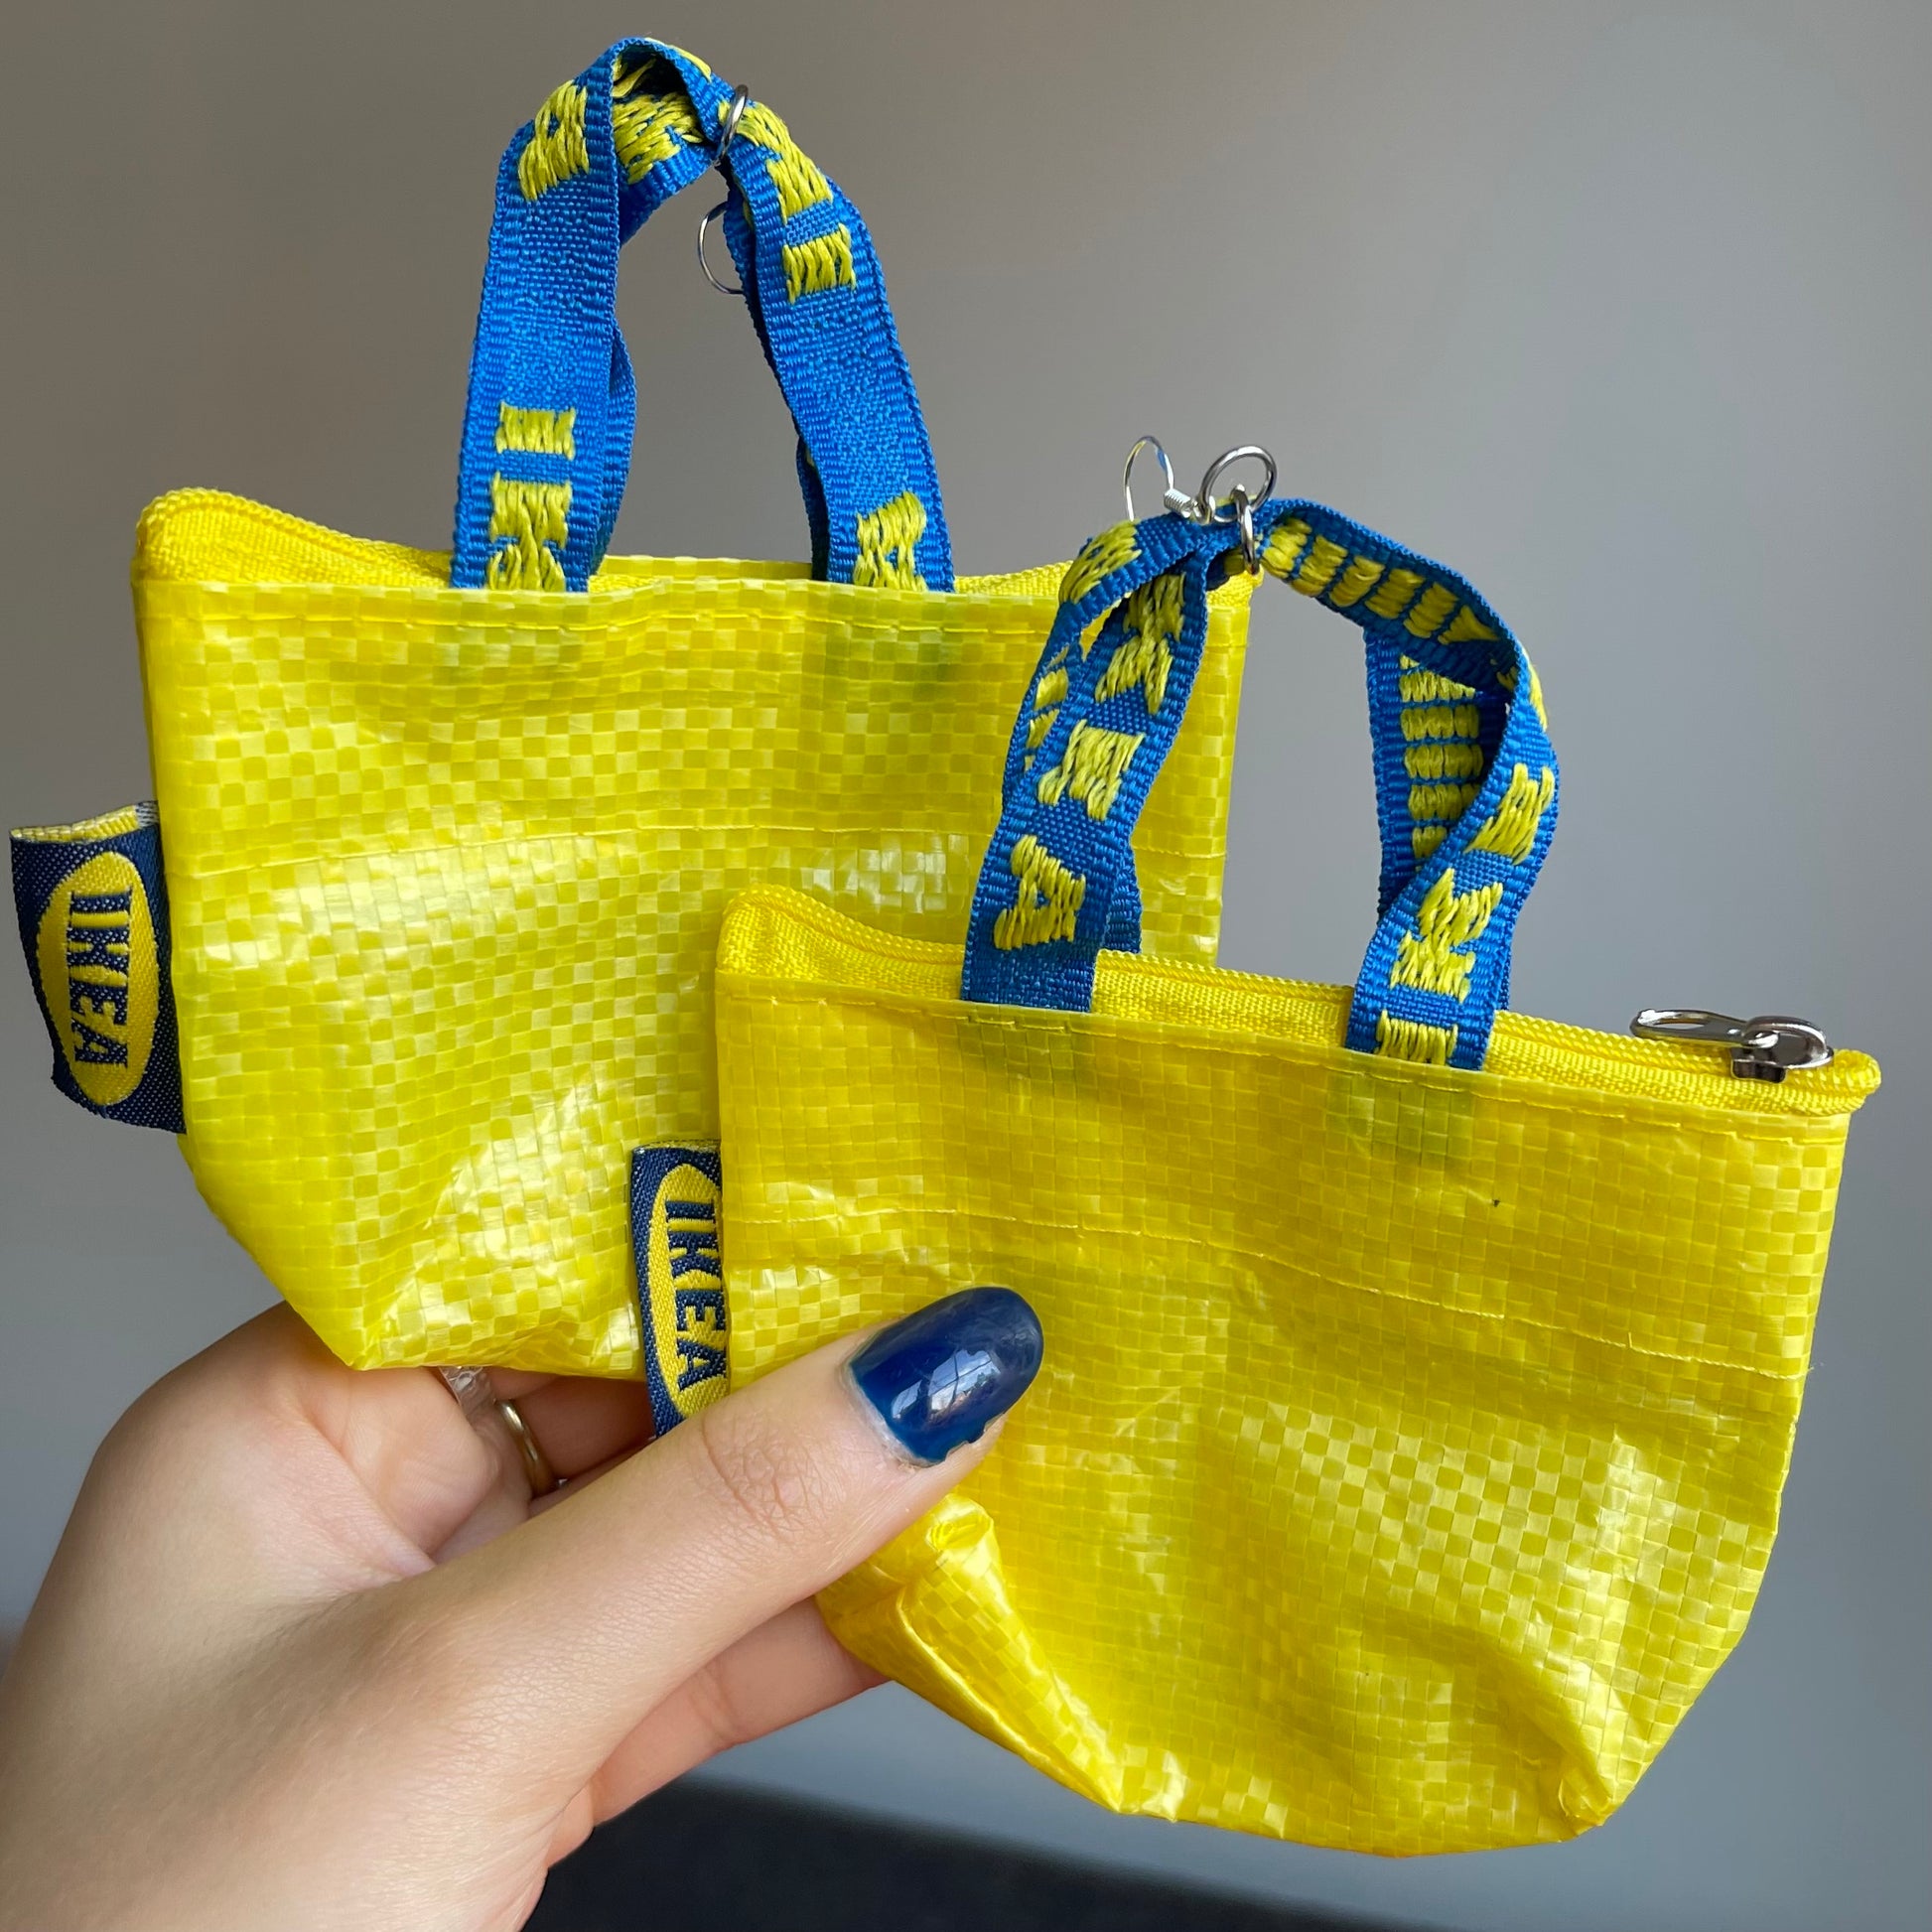 IKEA Check Tote Bags